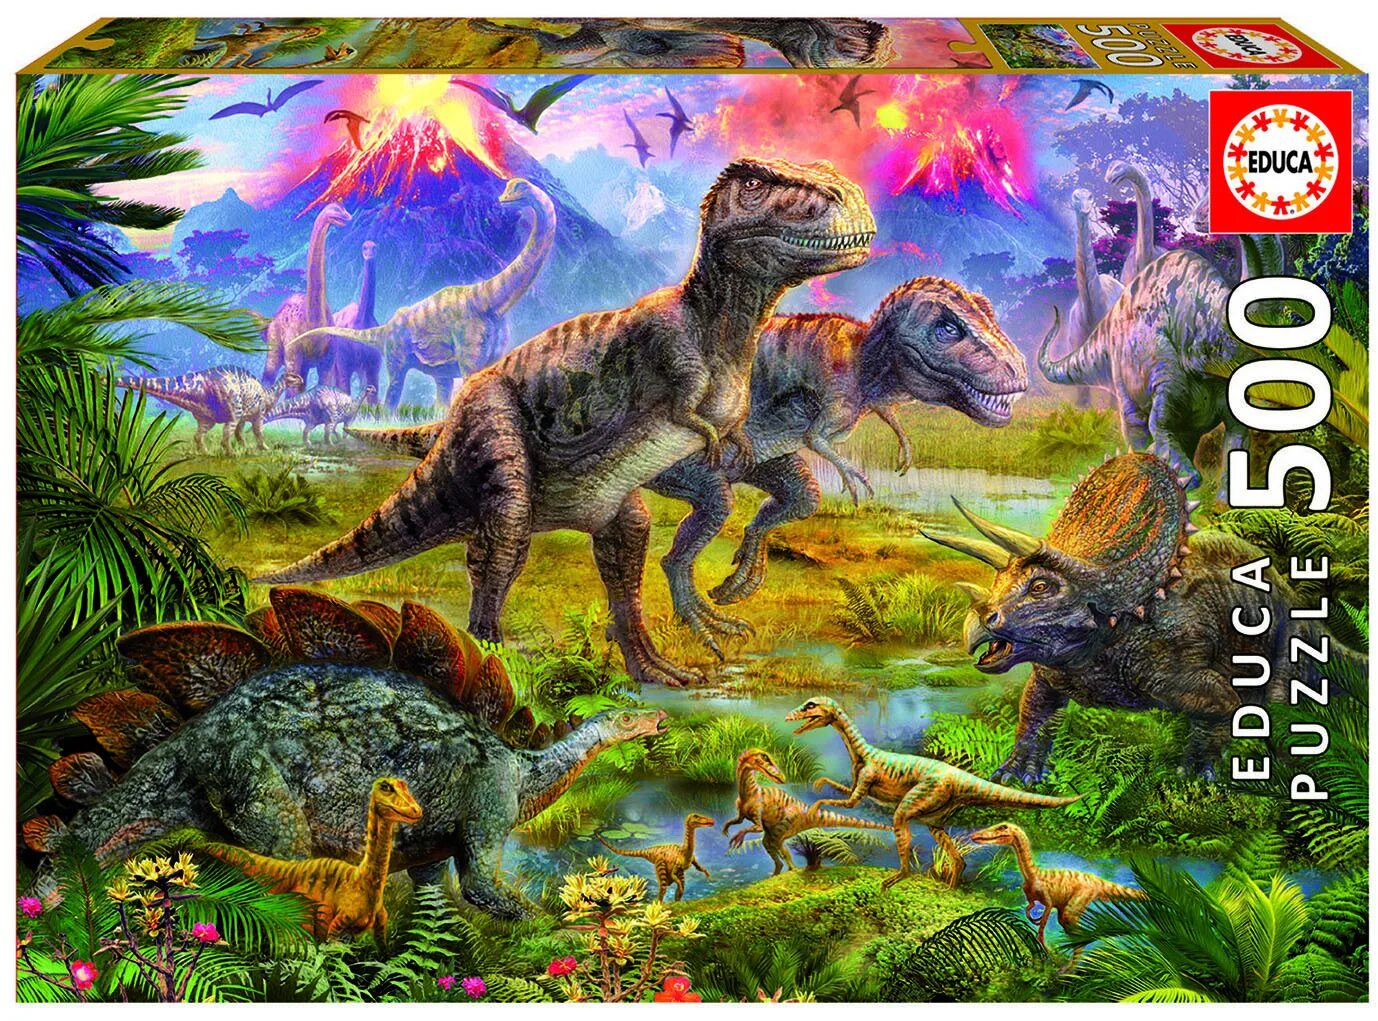 Юрский период мезозойской эры. Мир динозавров. Эпоха динозавров. Красивые динозавры. Урок мир динозавров